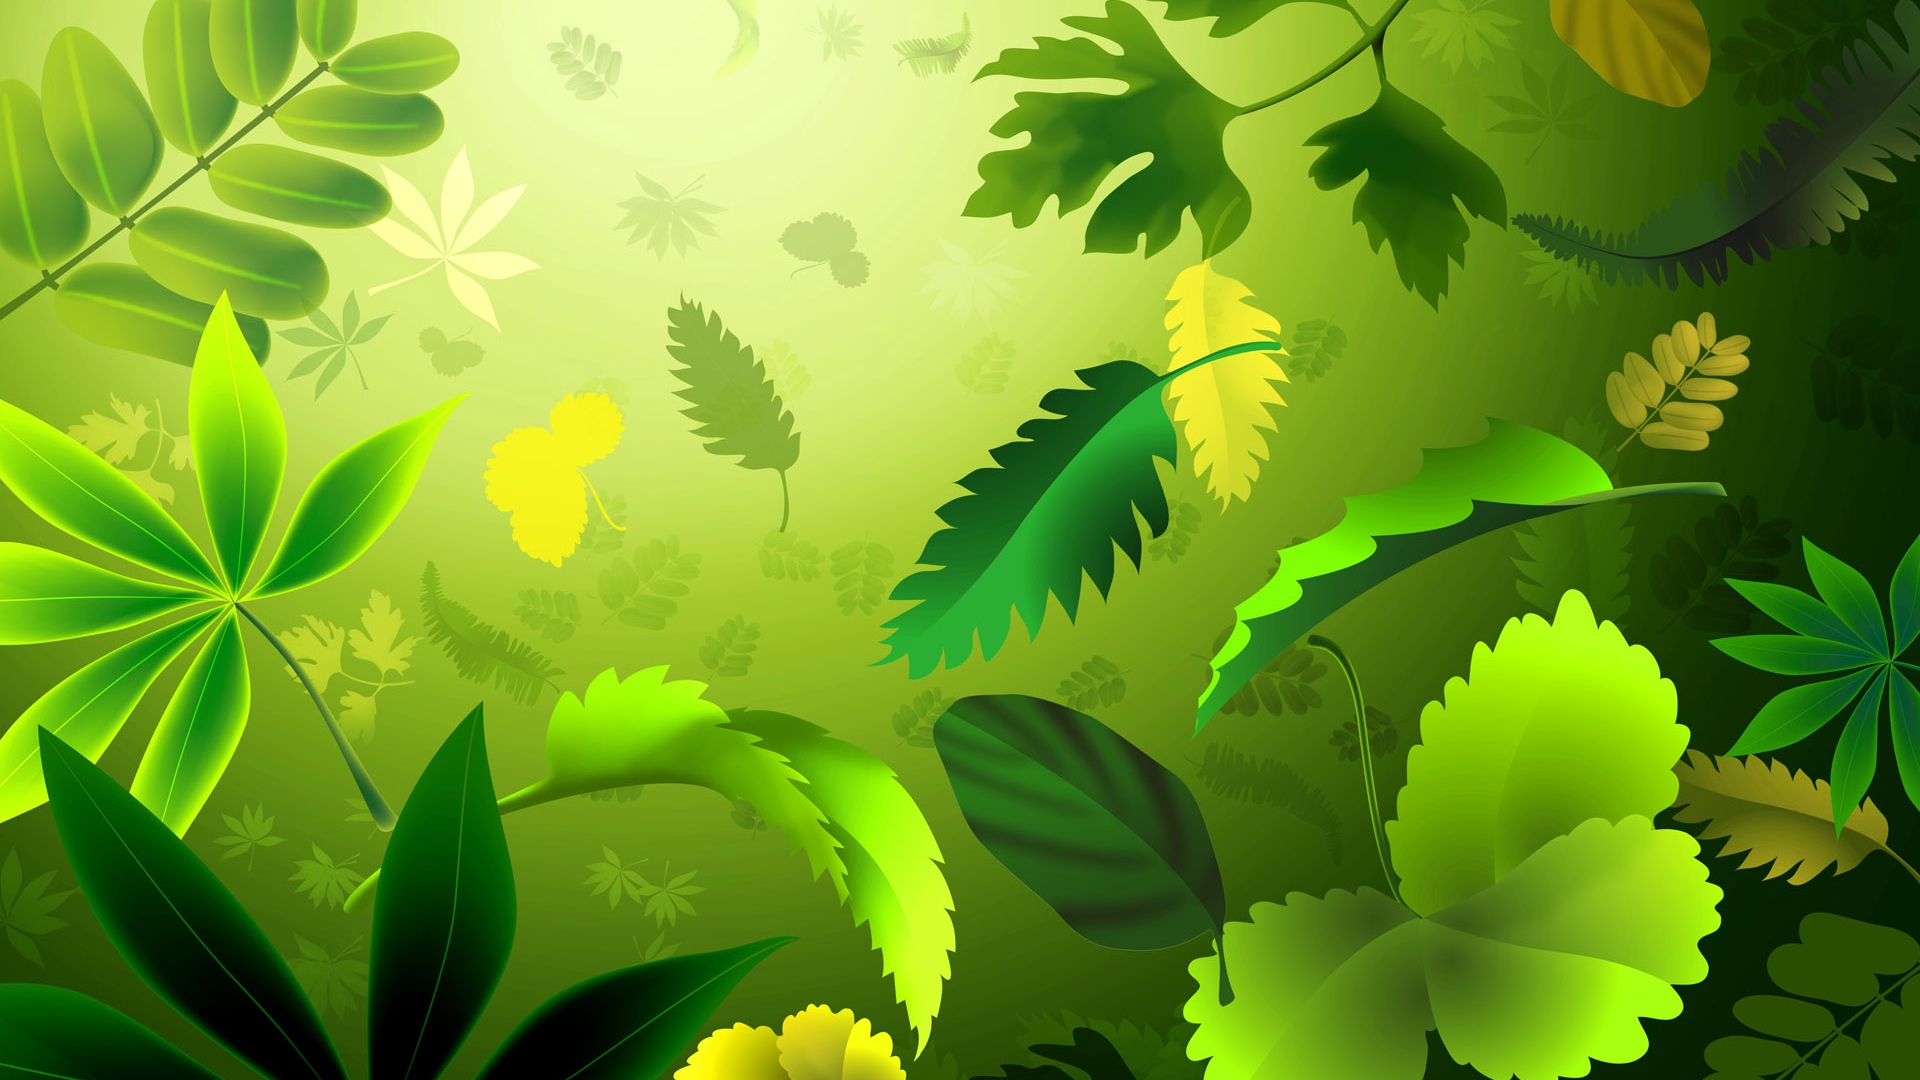 緑の壁紙デザイン,緑,葉,自然,工場,木